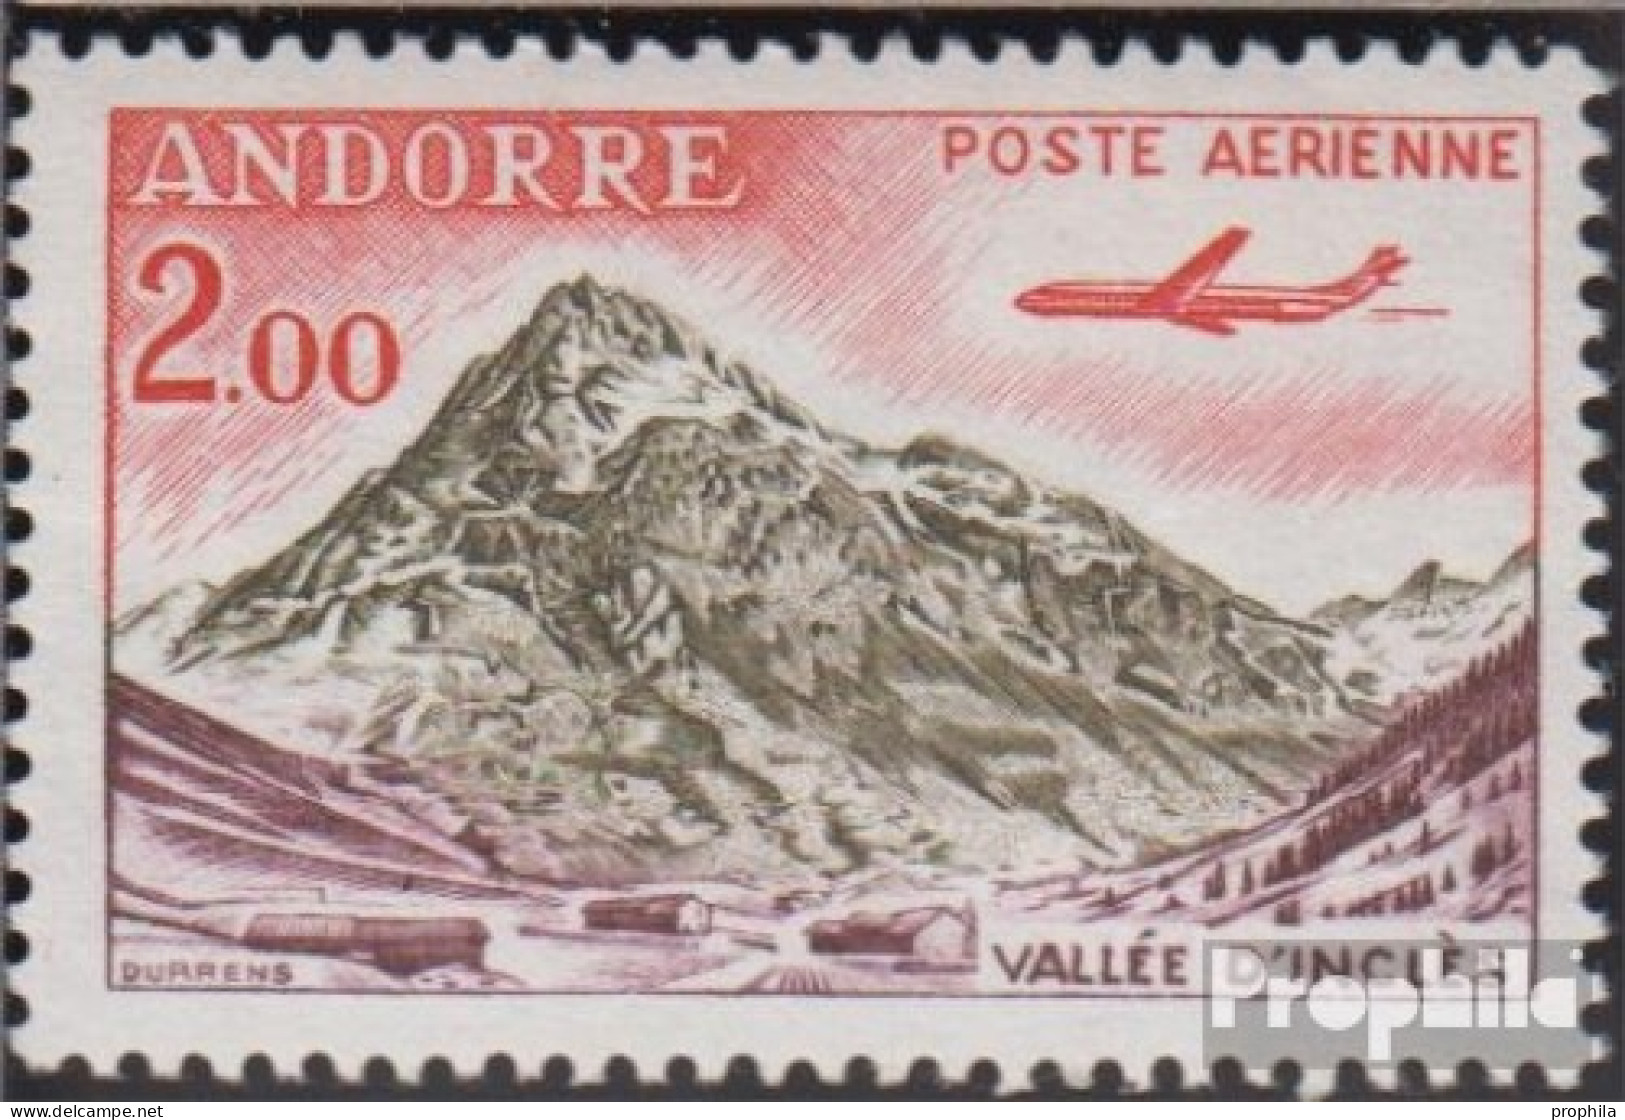 Andorra - Französische Post 175 Postfrisch 1961 Landschaften - Markenheftchen